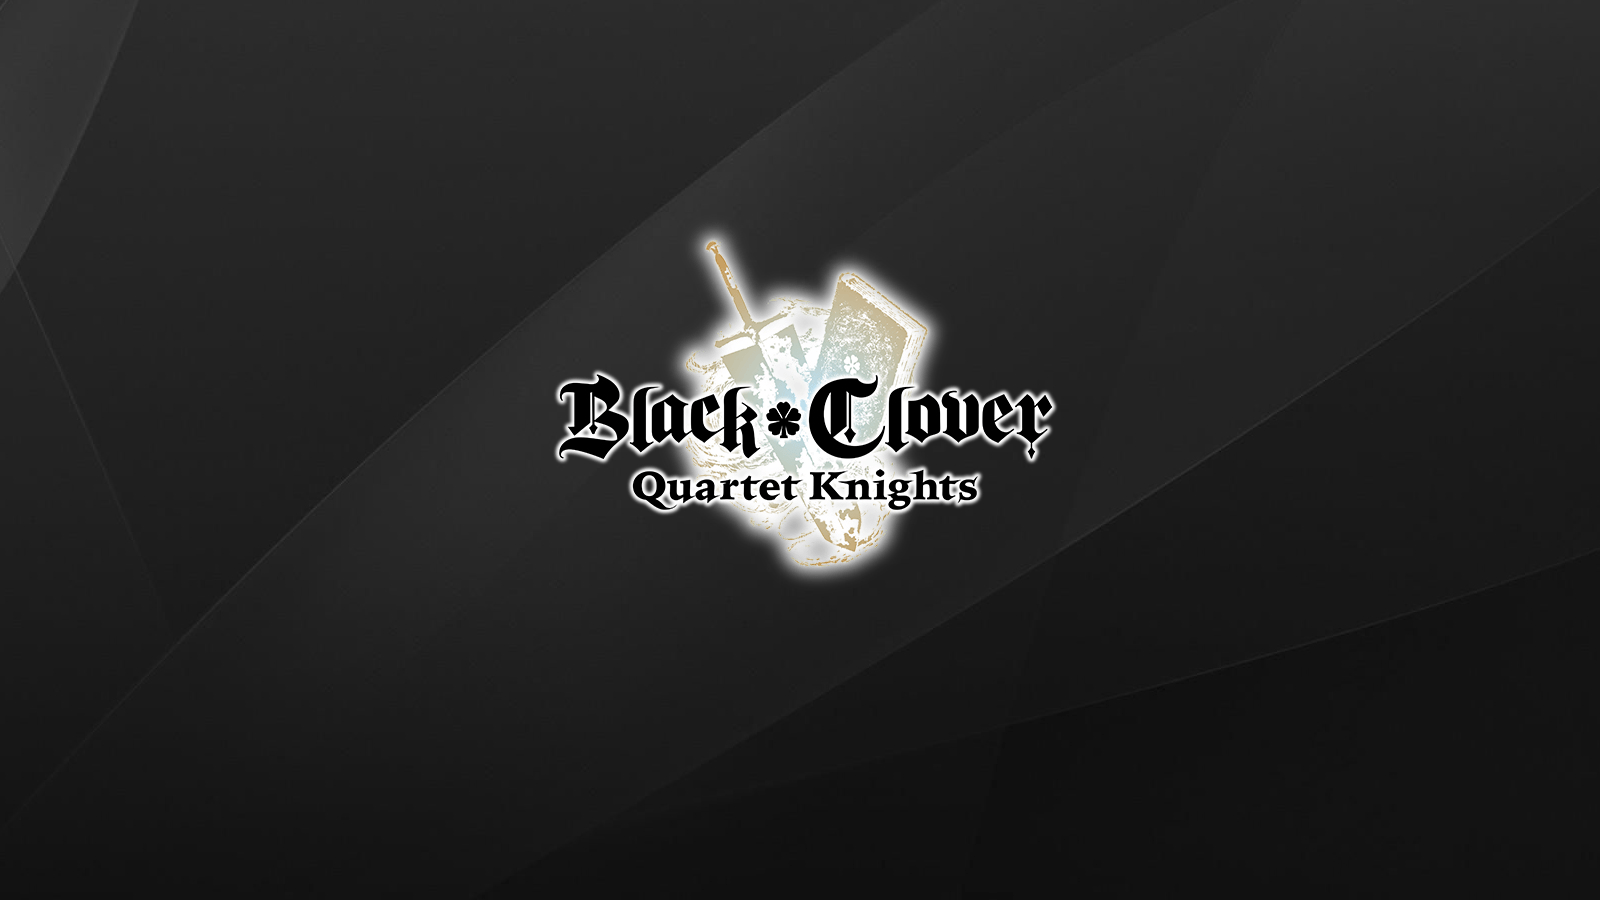 Black Clover 4K Logo Wallpaper Free Black Clover 4K Logo Background